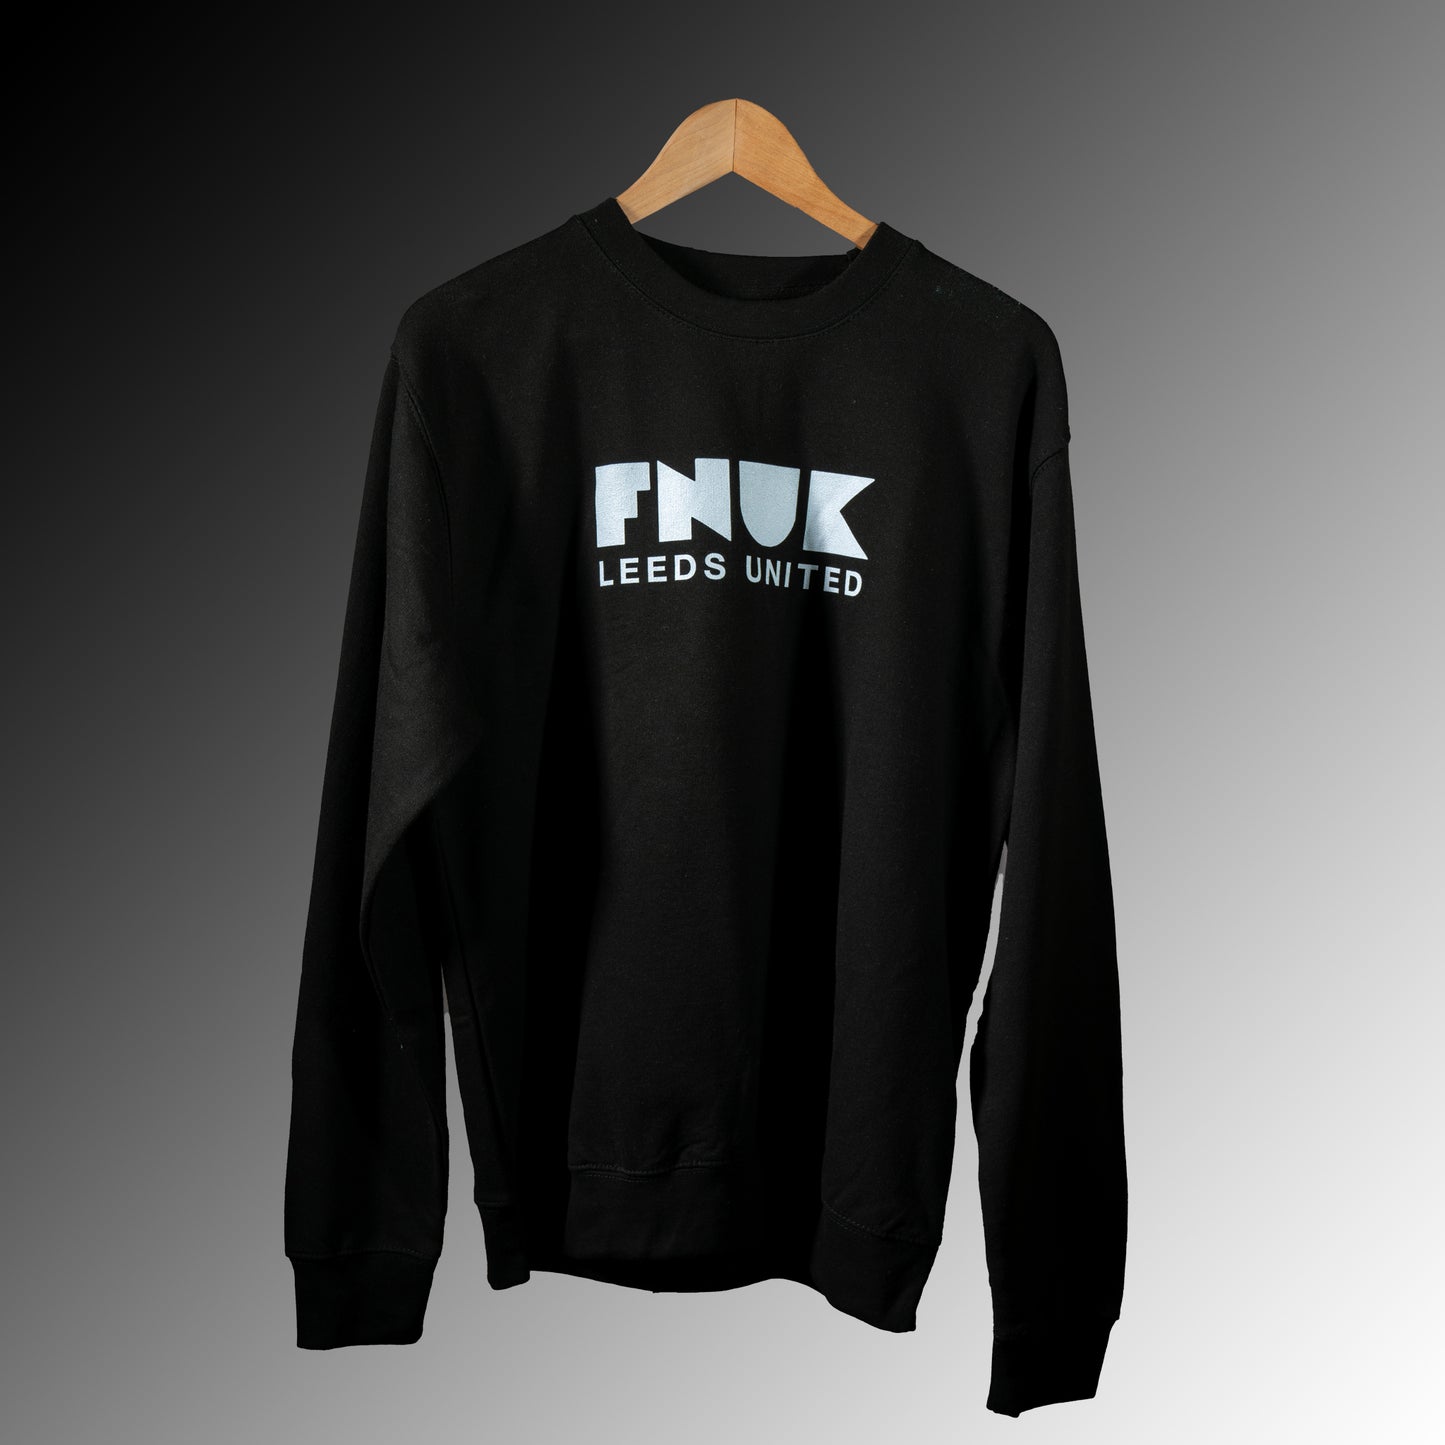 女式黑白 FNUK 徽标利兹联毛衣